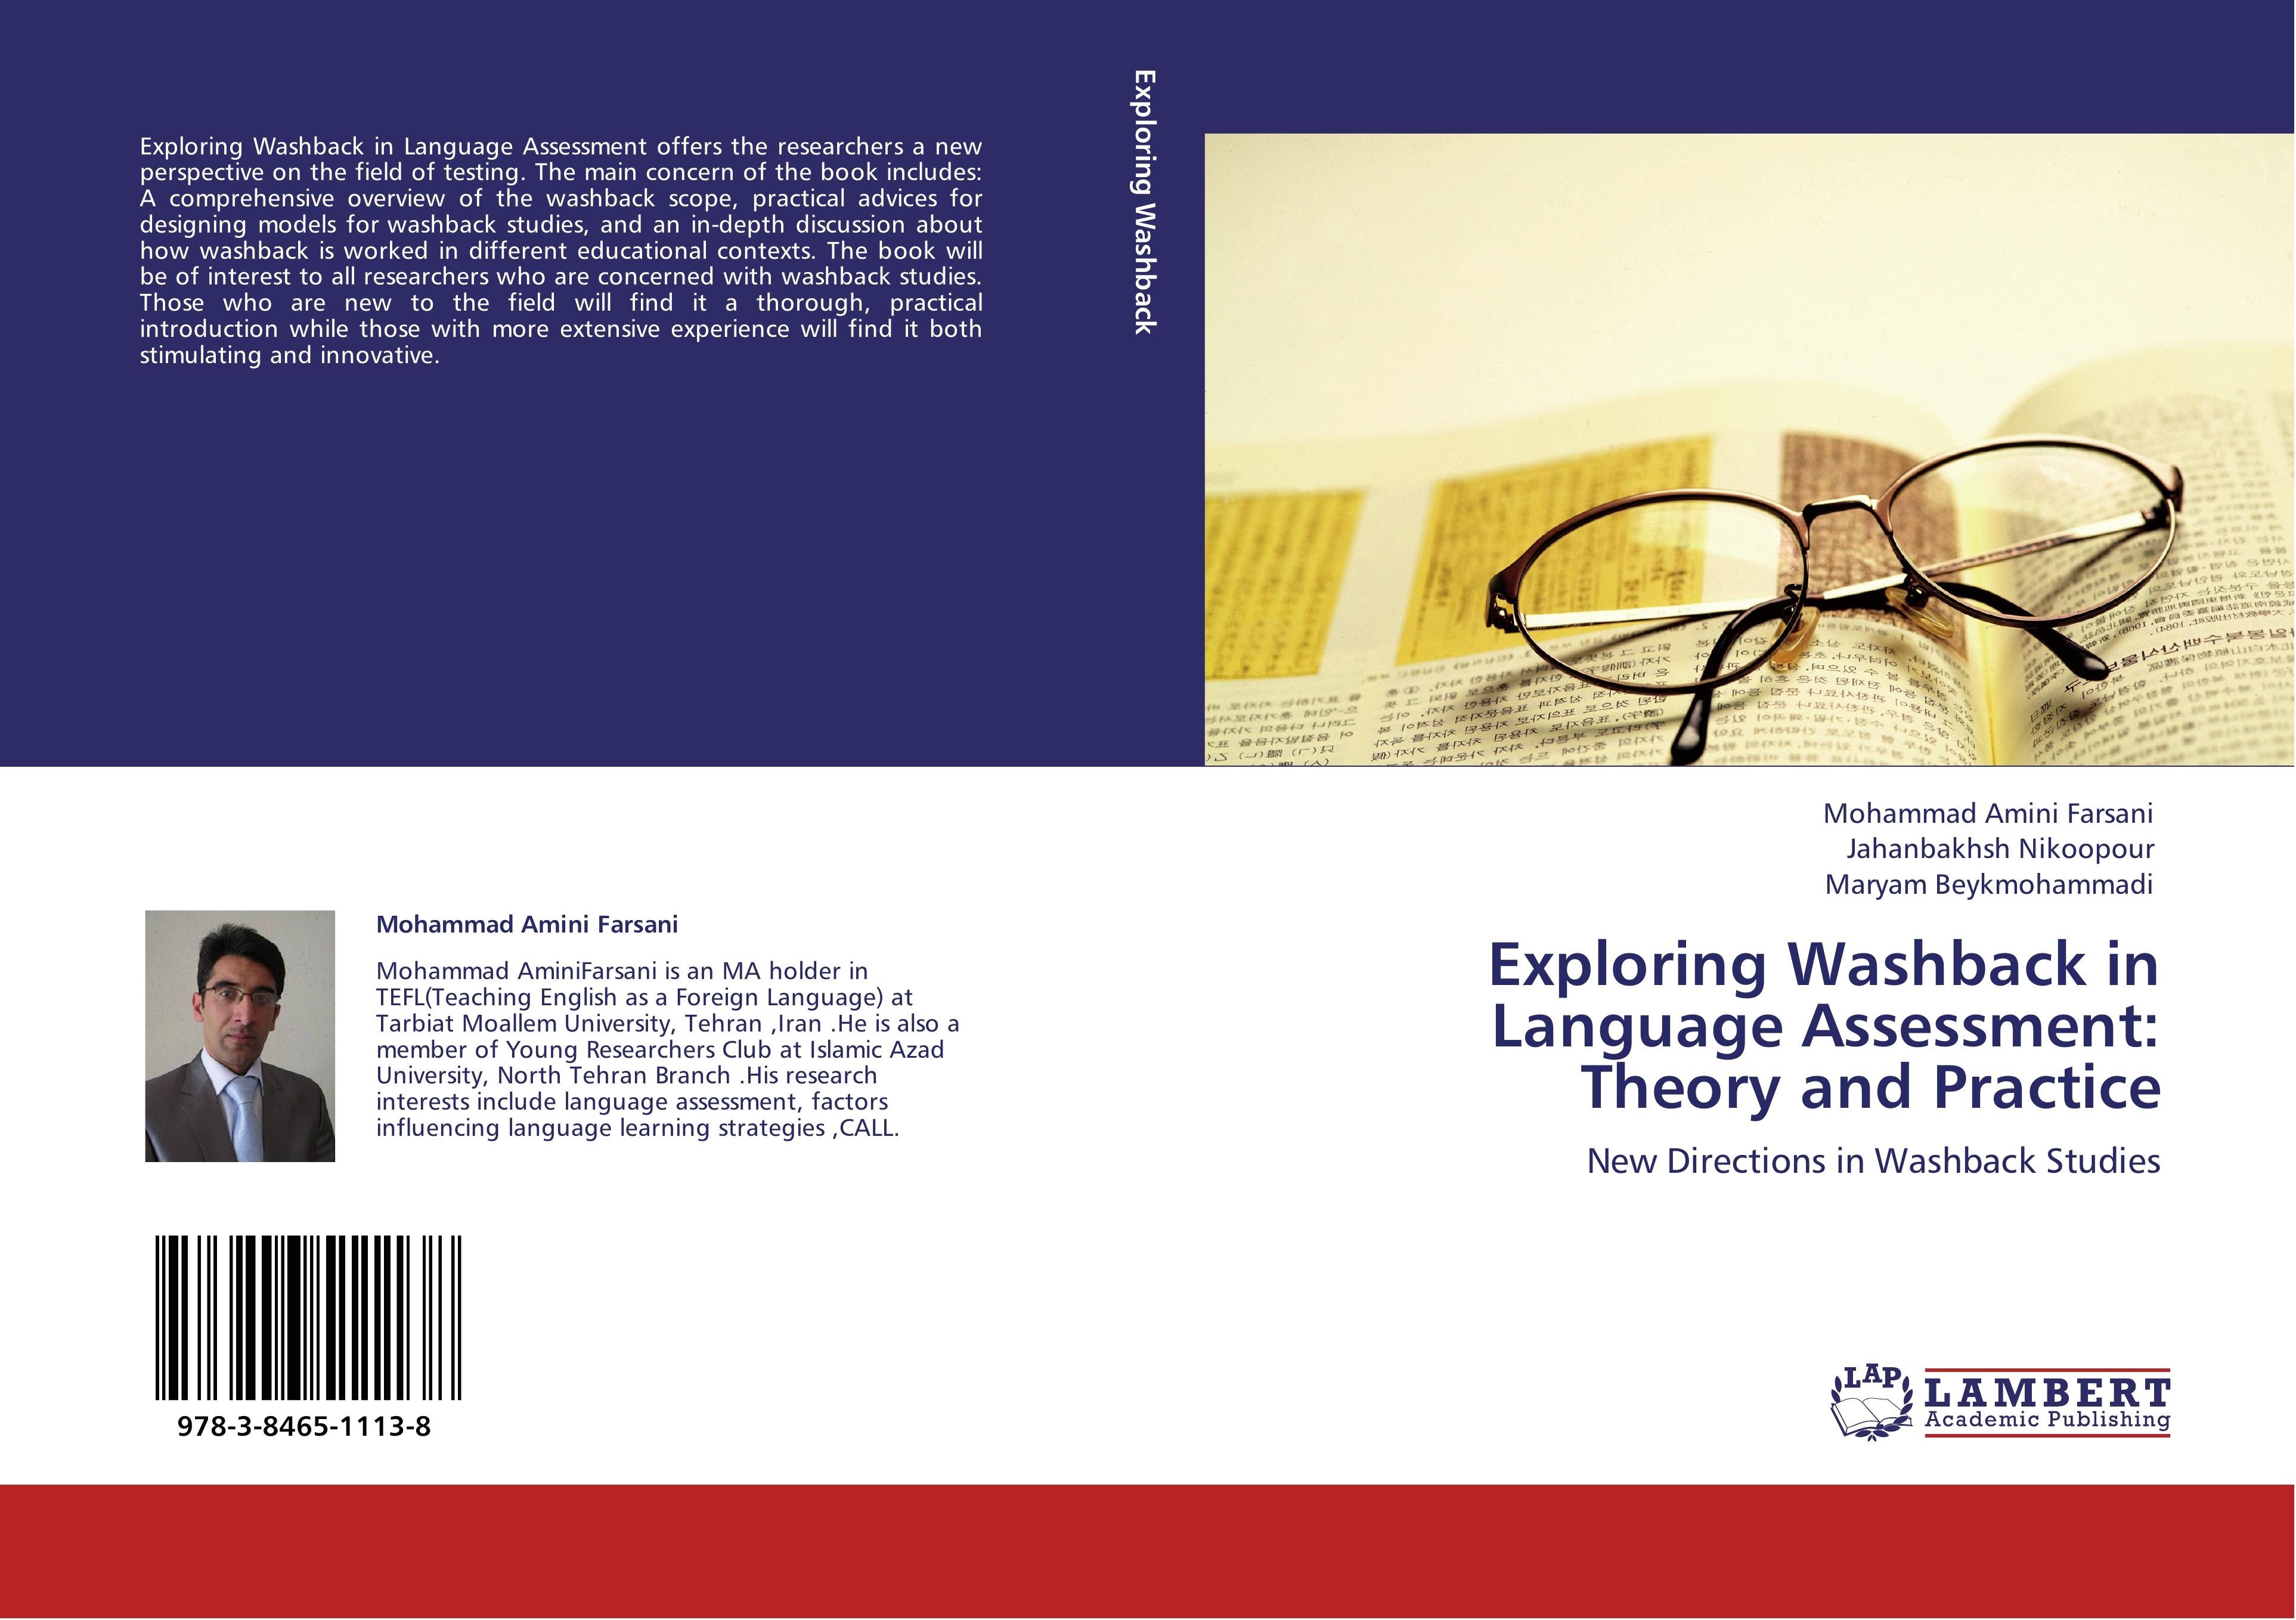 Exploring Washback in Language Assessment: Theory and Practice - Mohammad Amini Farsani|Jahanbakhsh Nikoopour|Maryam Beykmohammadi